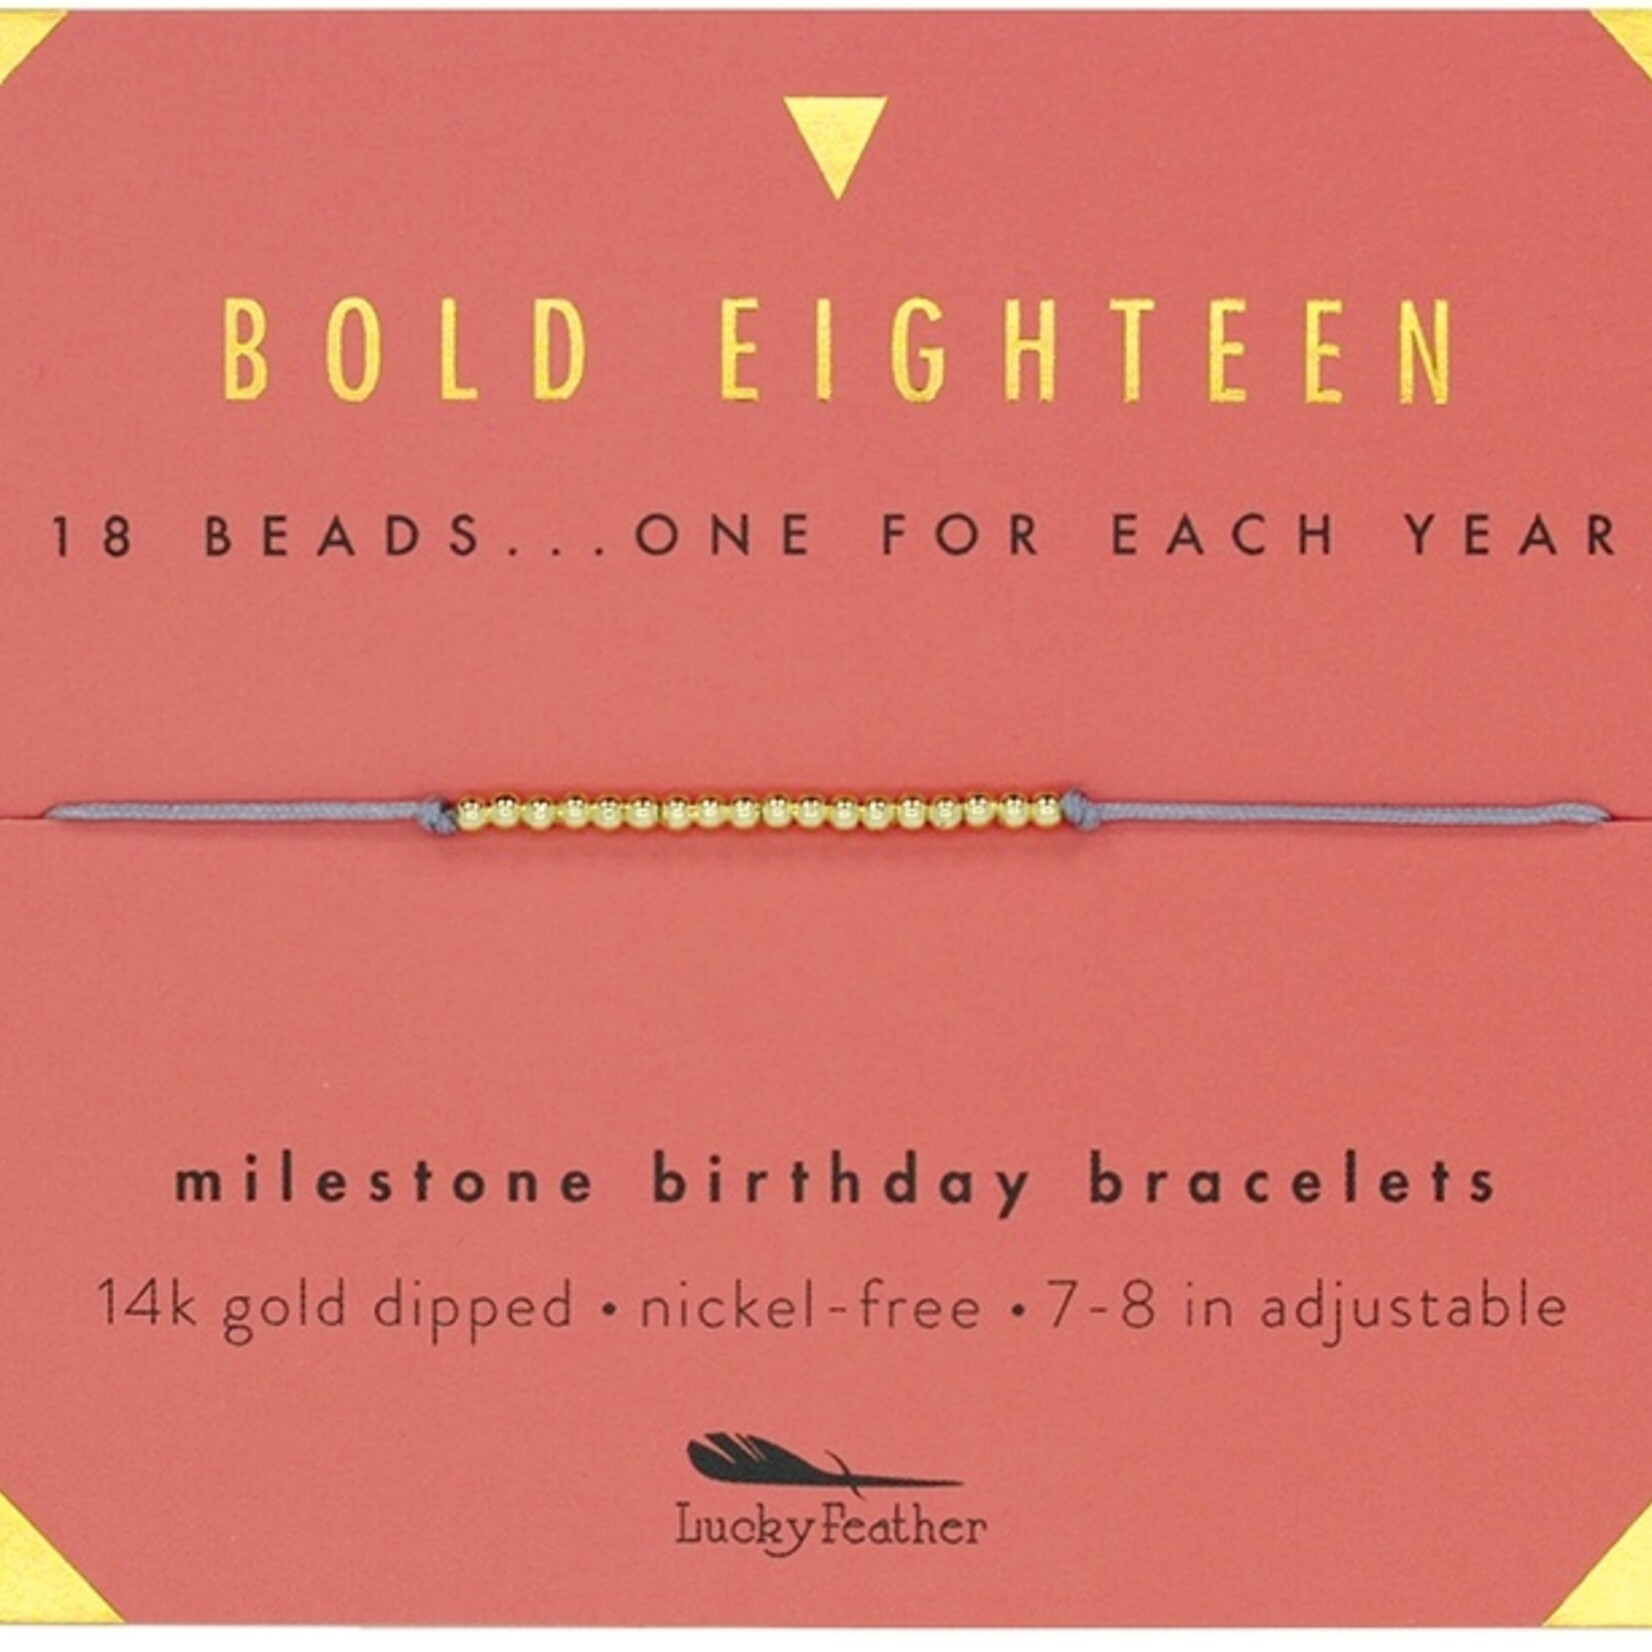 Lucky Feather Lucky Feather - Bold Eighteen Milestone Birthday Bracelet